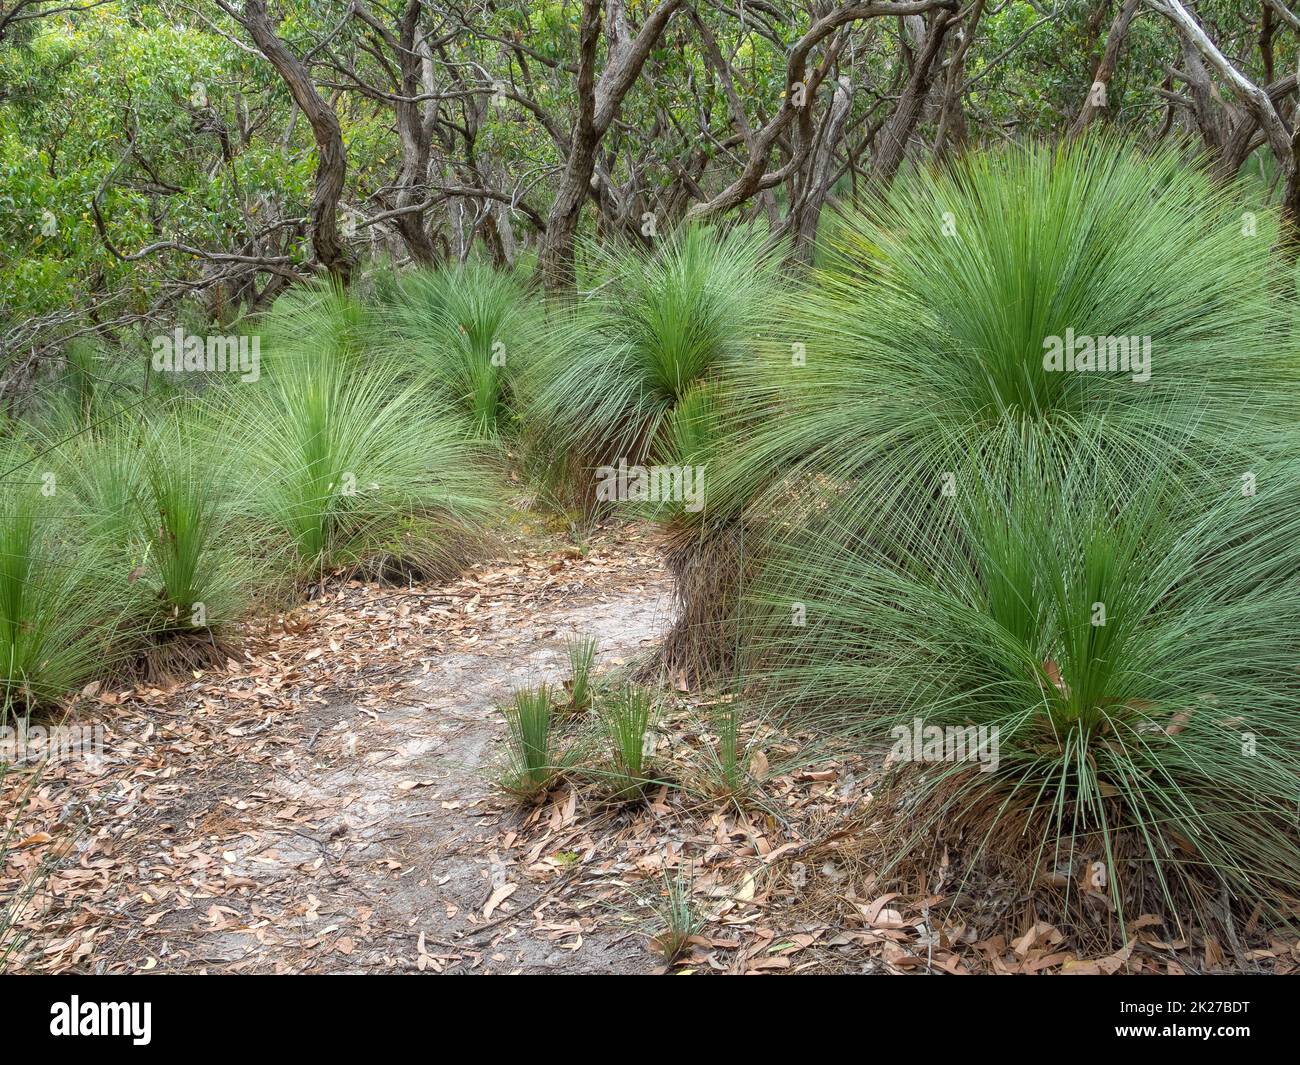 Spiky grass trees - Johanna Stock Photo